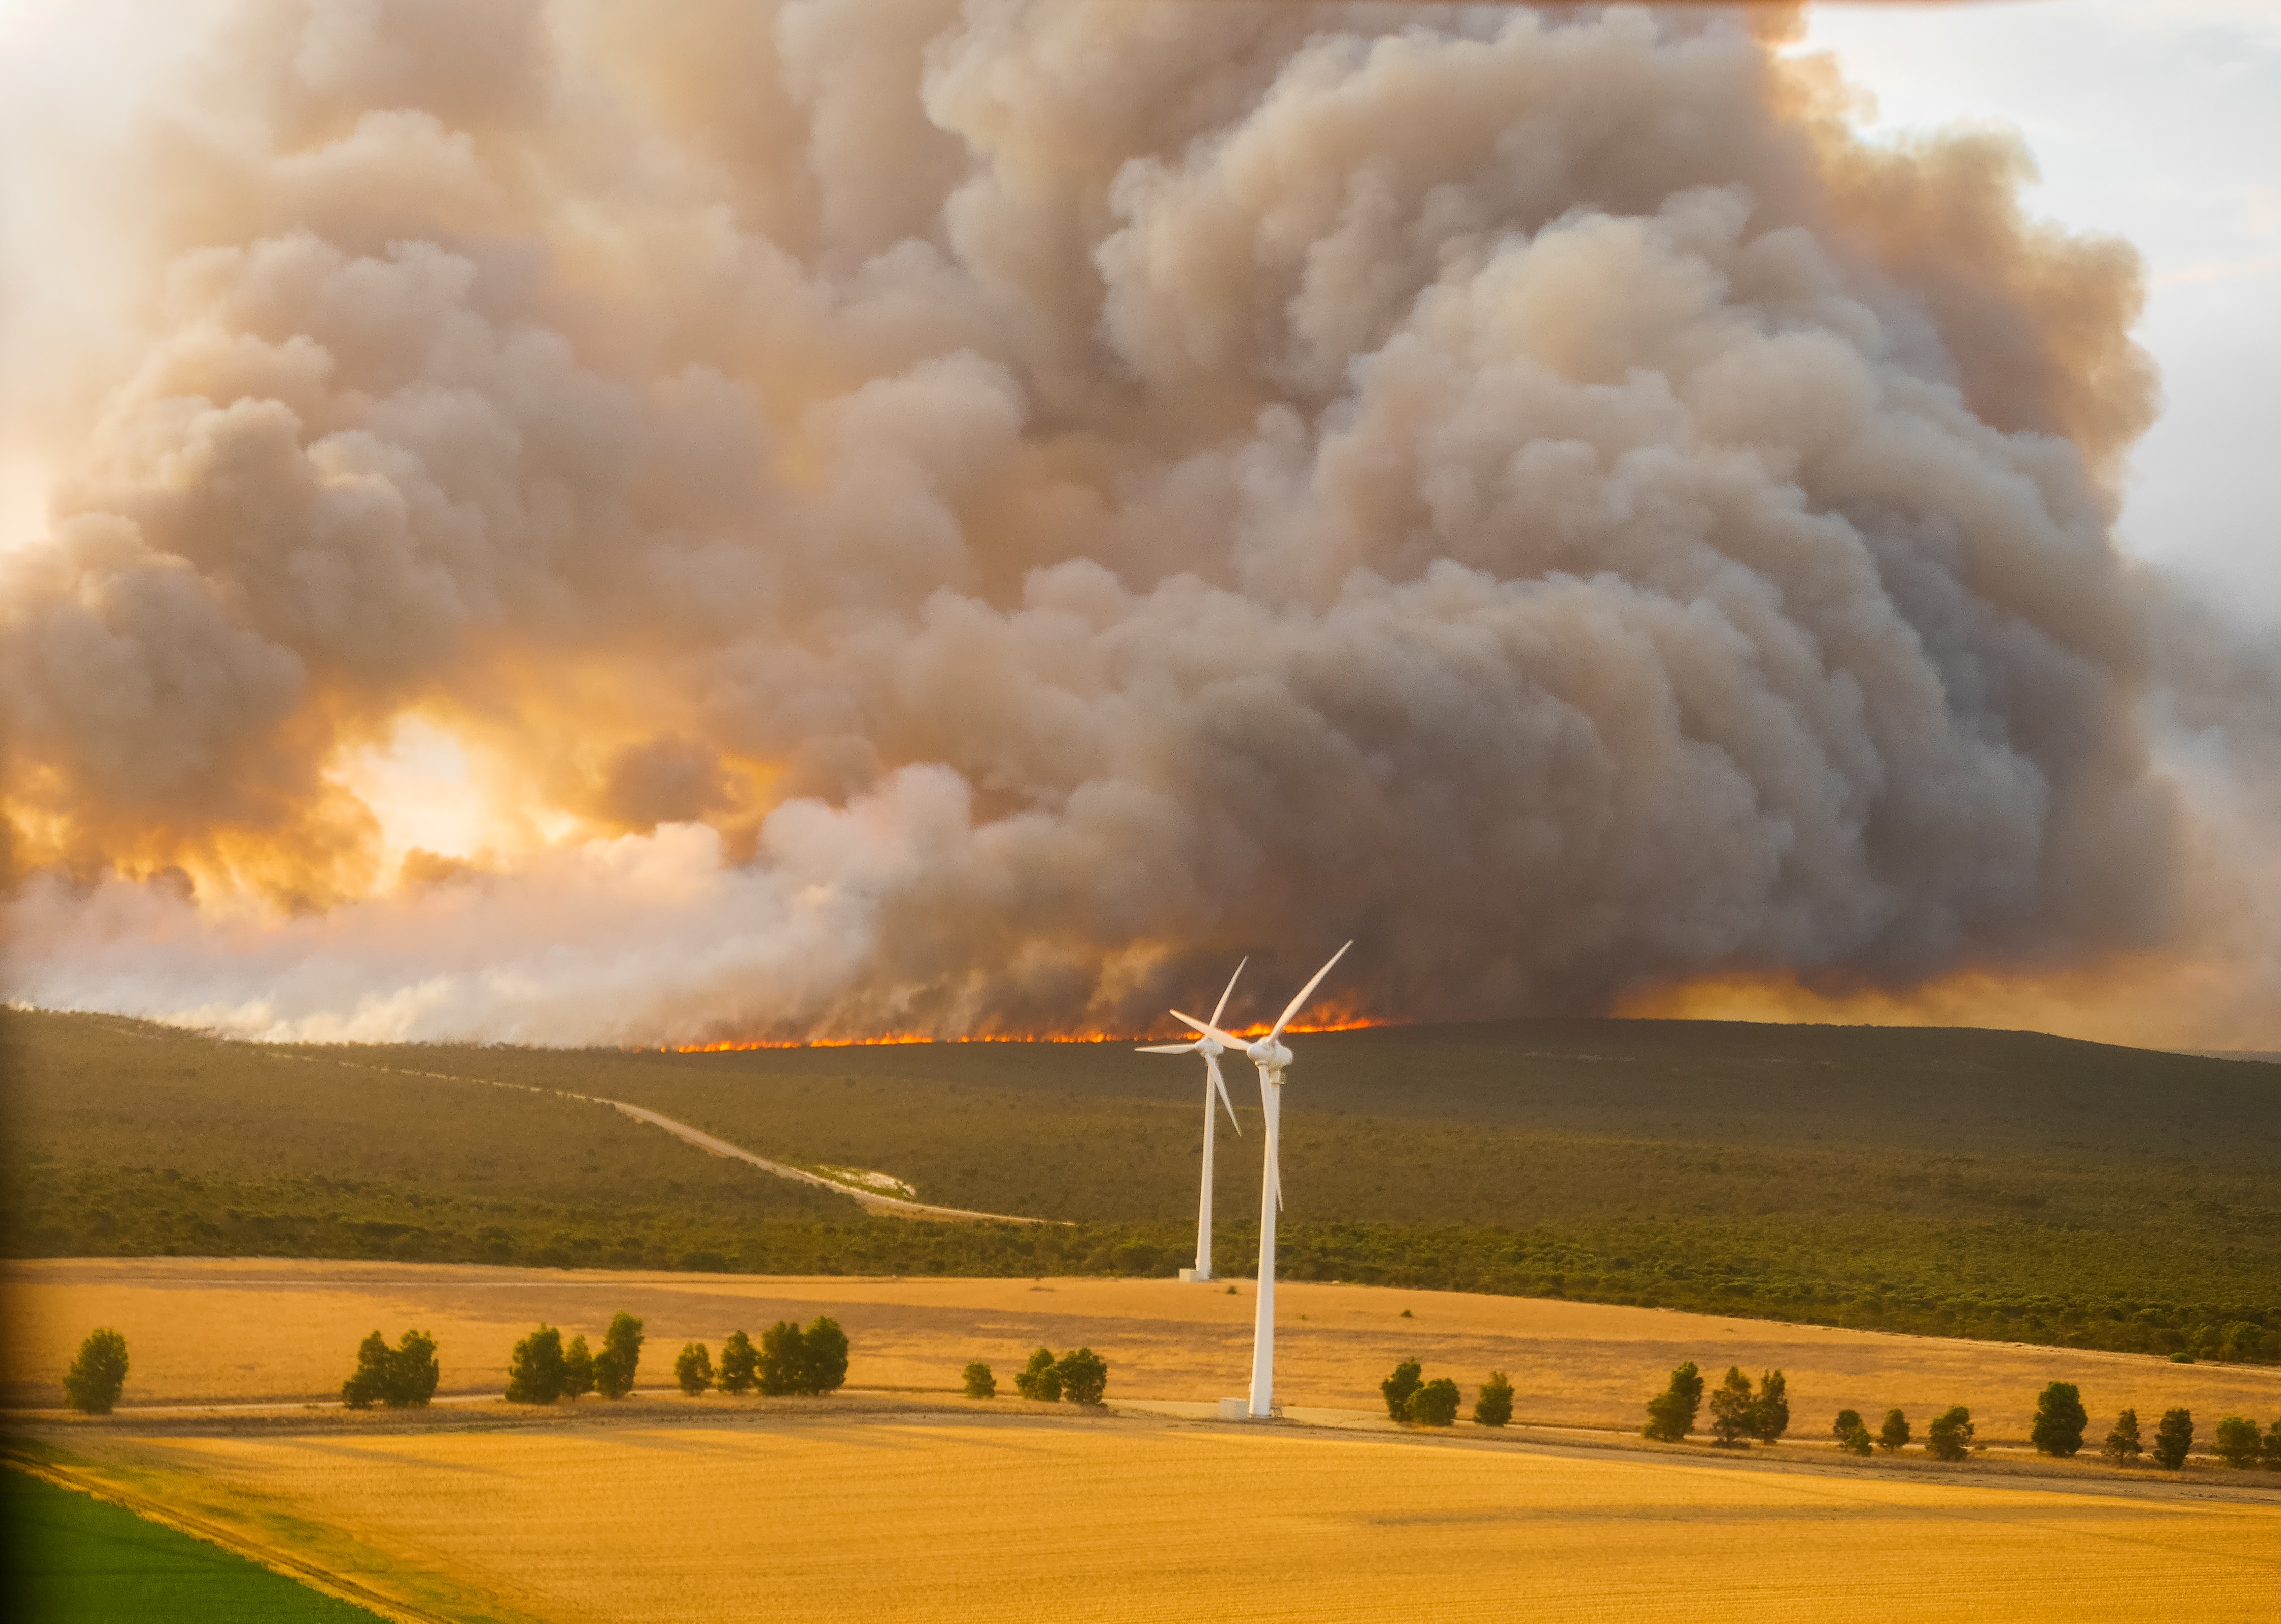 Bushfire smoke in a field with wind turbines